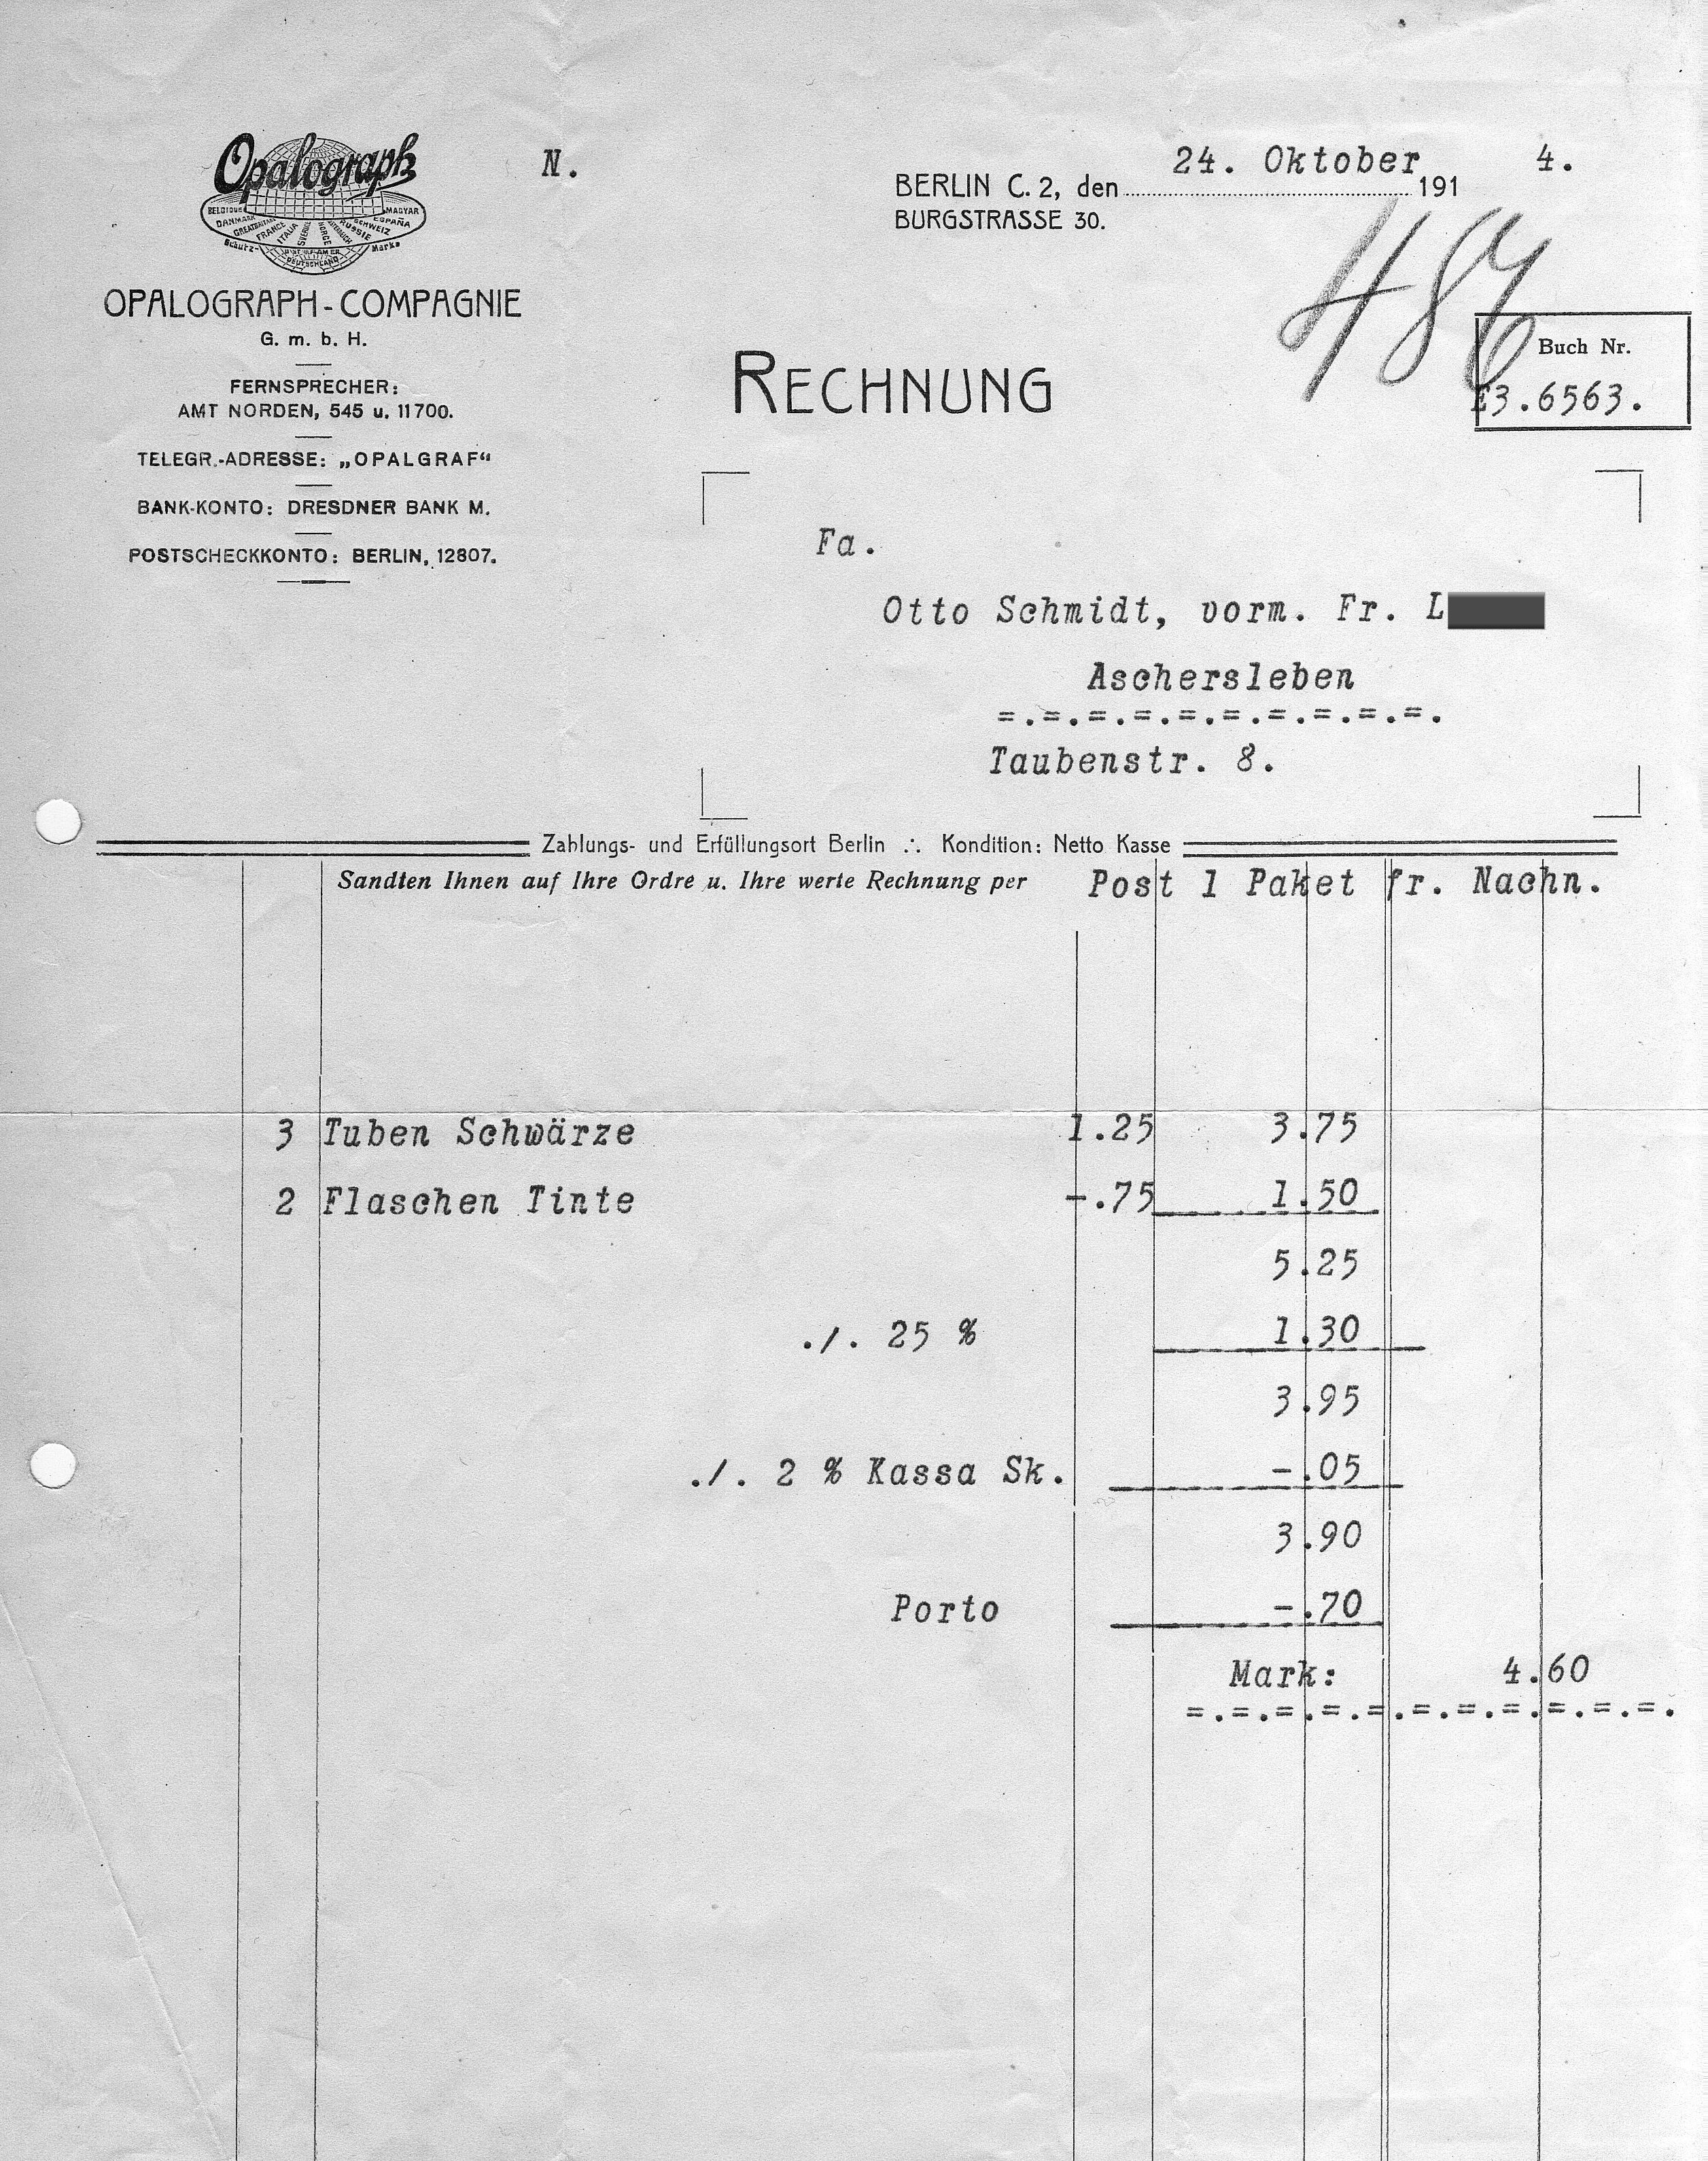 Vergleichs-Rechnung OPALOGRAPH COMPAGNIE vom 24.11.1914 über einen Kauf von fetthaltiger Vervielfältigungsfarbe und Spezialtinte für die Vervielfältigungsvorlage, Privatbesitz